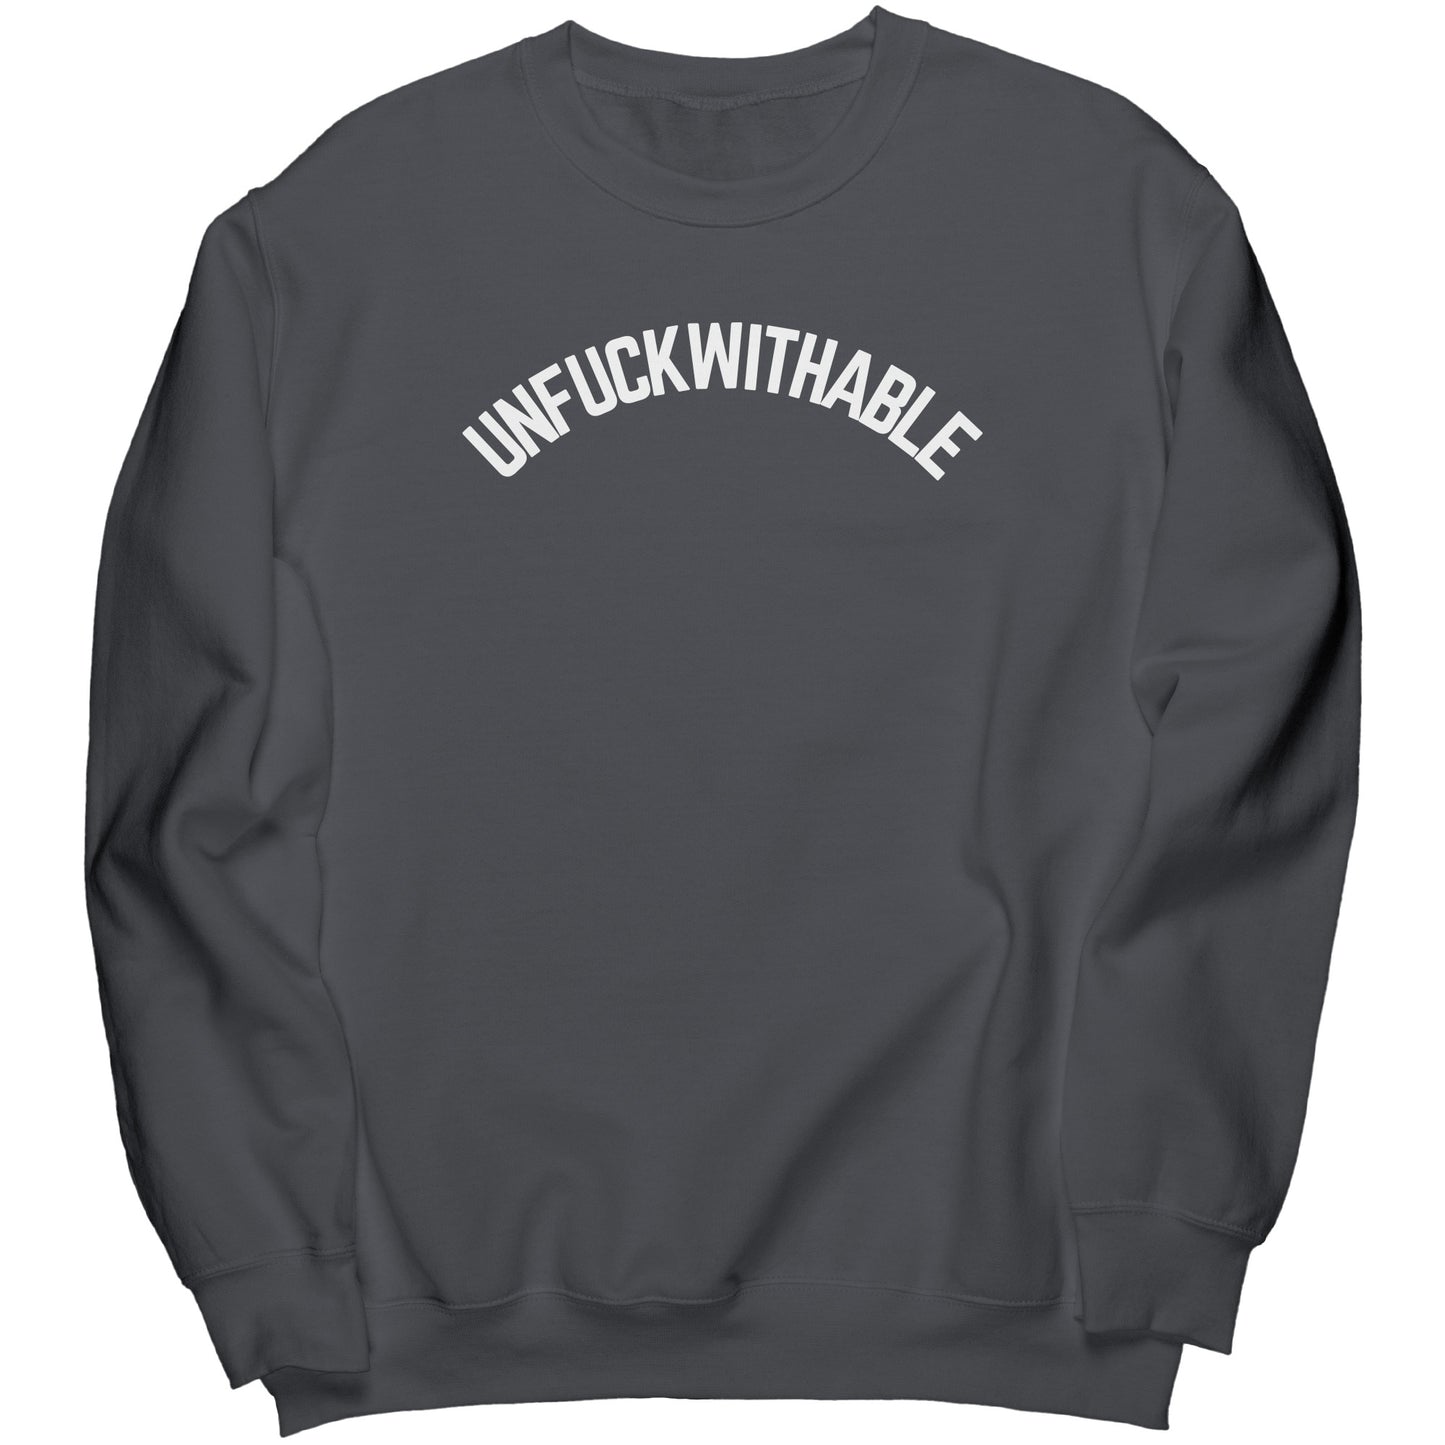 Unf withable Crew Sweatshirt